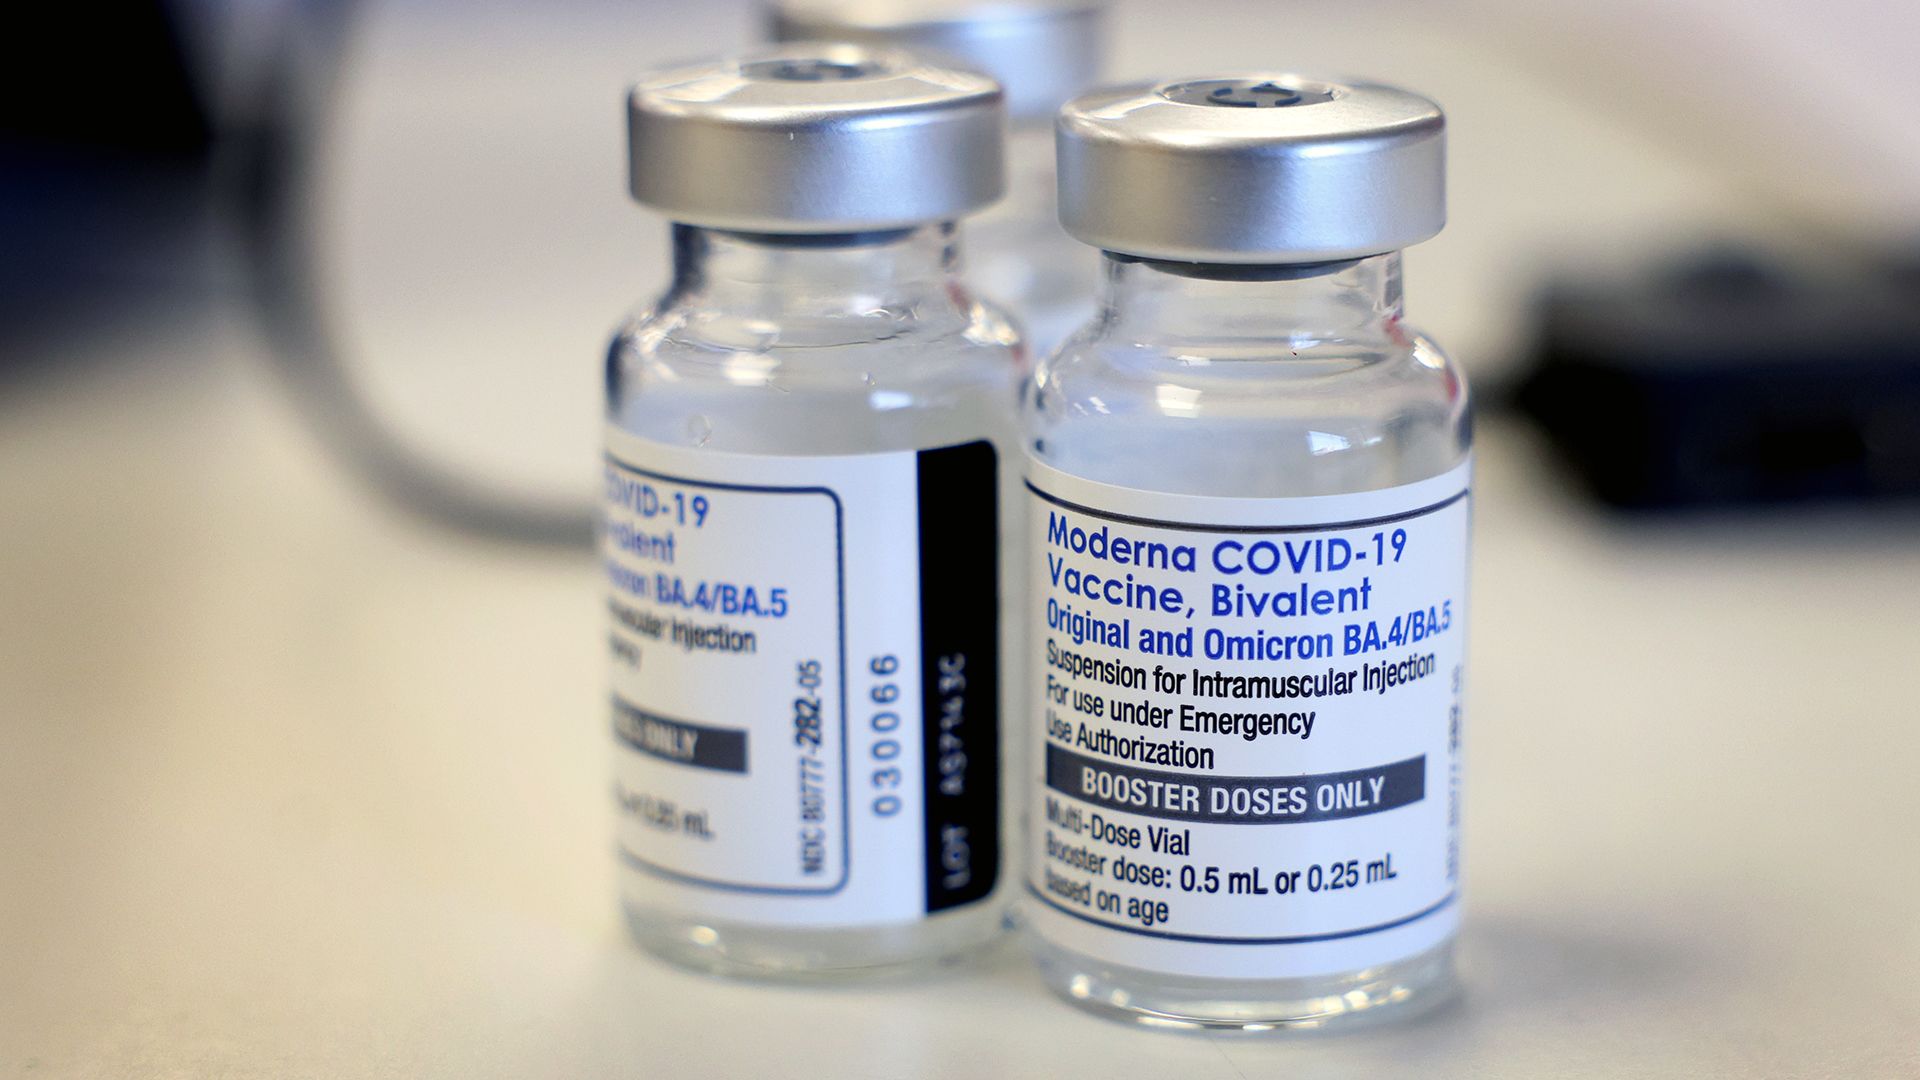 Who makes the bivalent COVID vaccine?